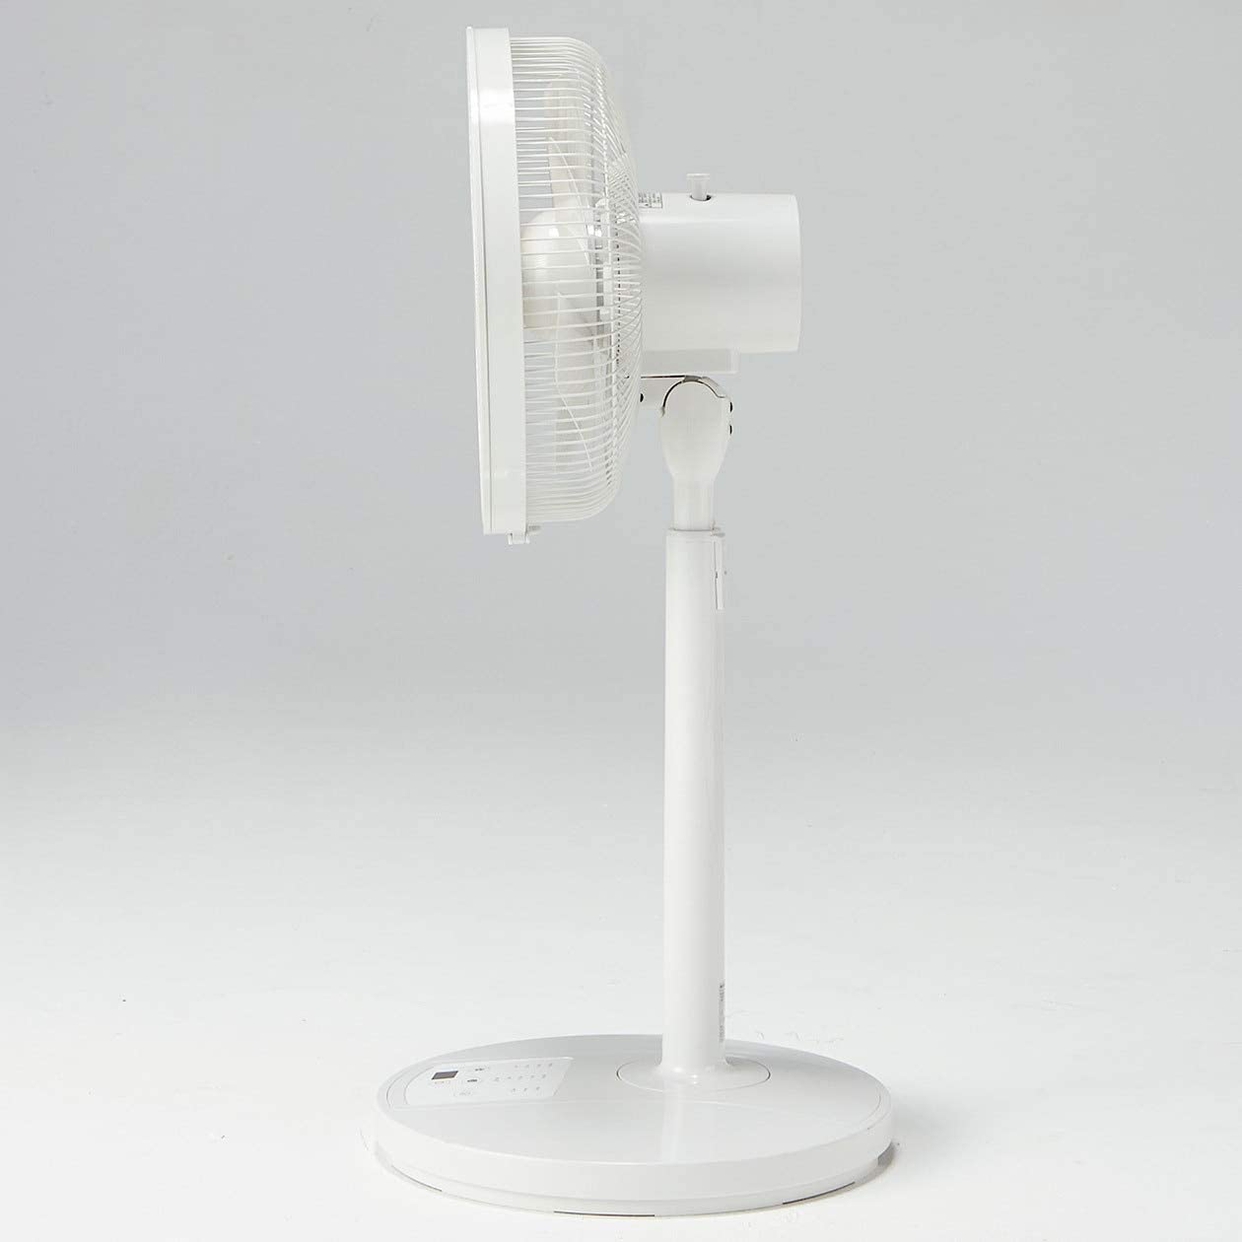 無印良品(MUJI) 扇風機・リモコン付（低騒音ファン・サーキュレーションタイプ）ハイポジション R30M-HRBWの商品画像サムネ4 